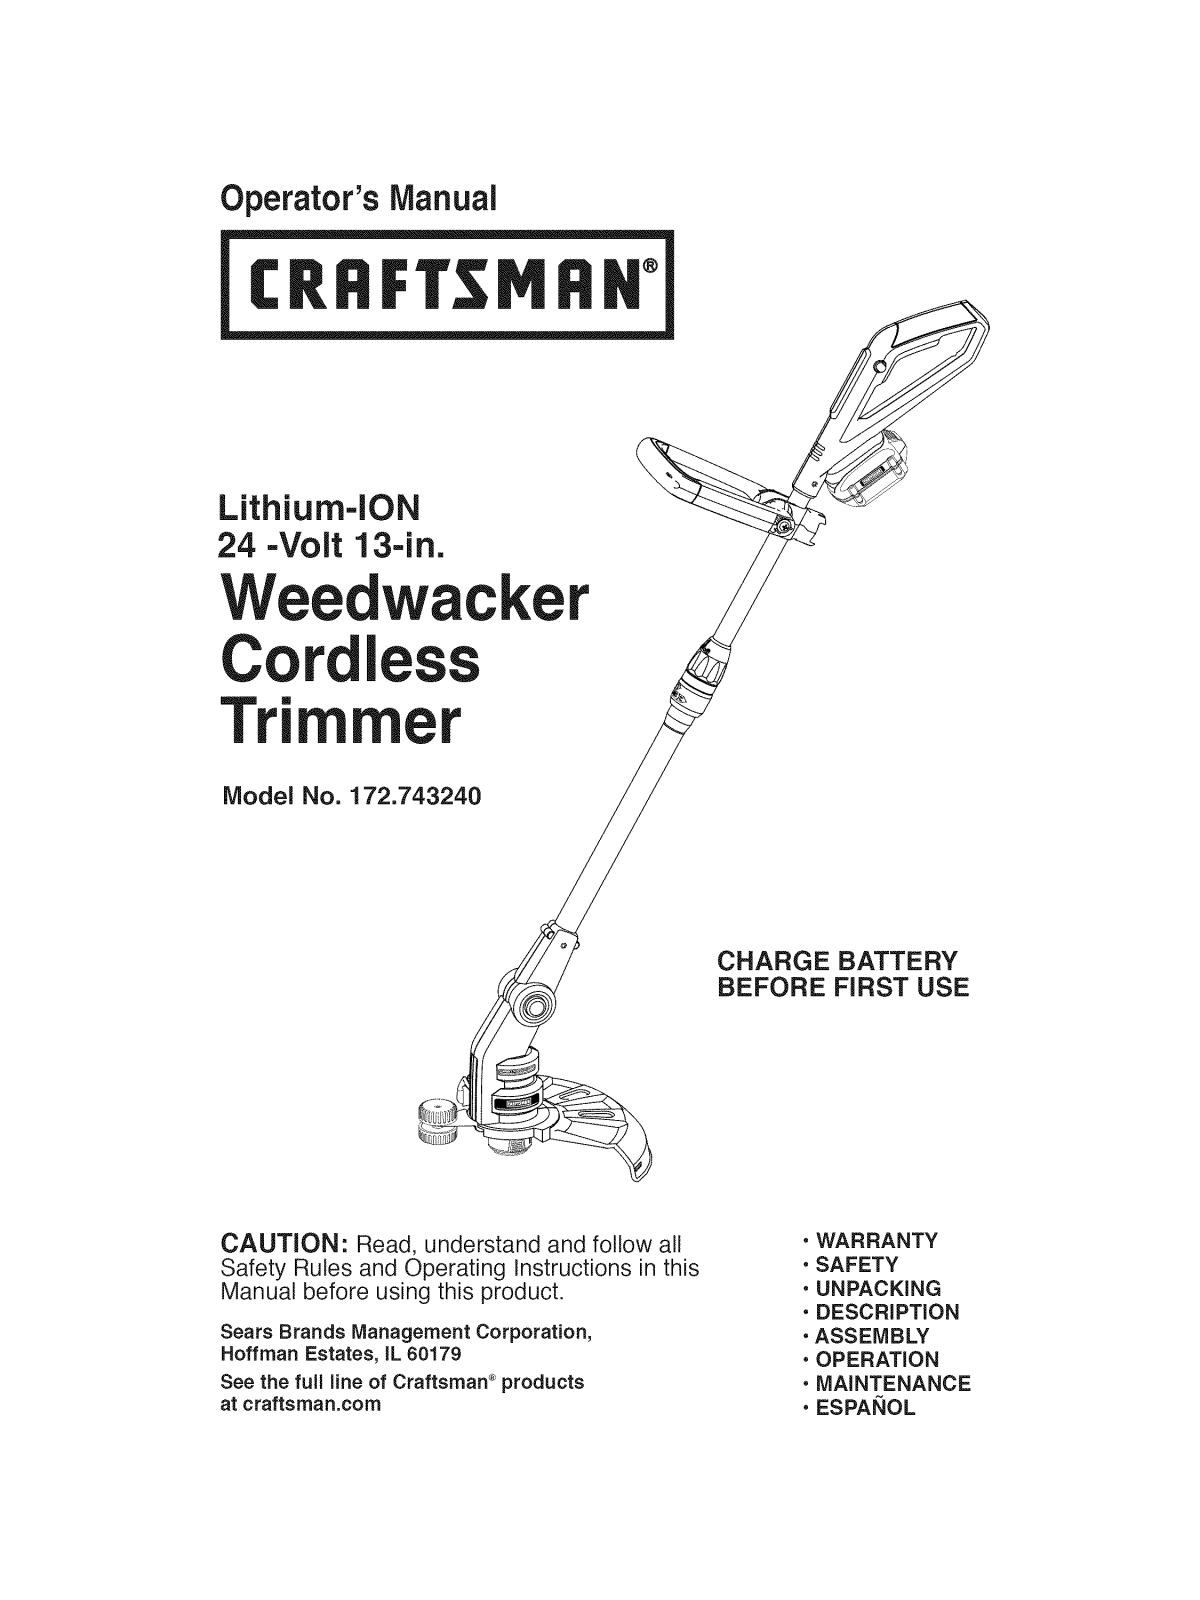 Craftsman 172.743240 User Manual